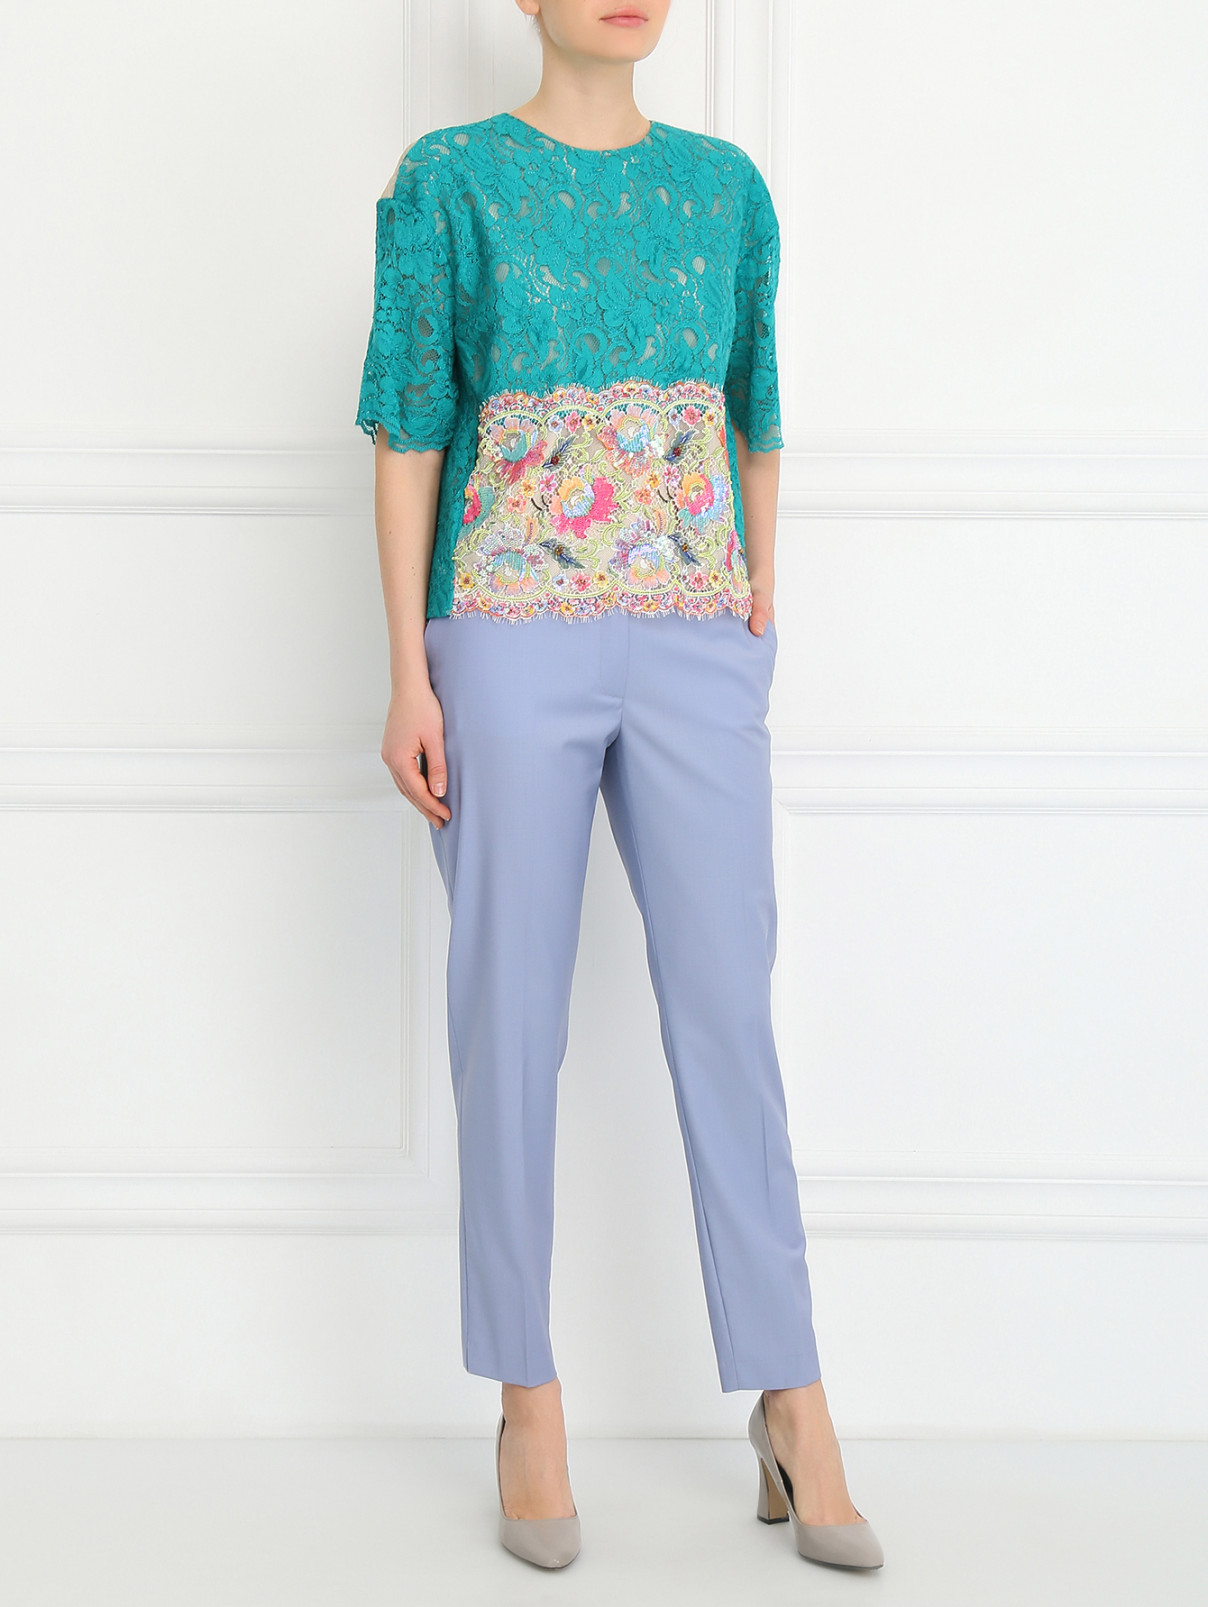 Ажурная блуза декорированная стеклярусом и пайетками Antonio Marras  –  Модель Общий вид  – Цвет:  Зеленый